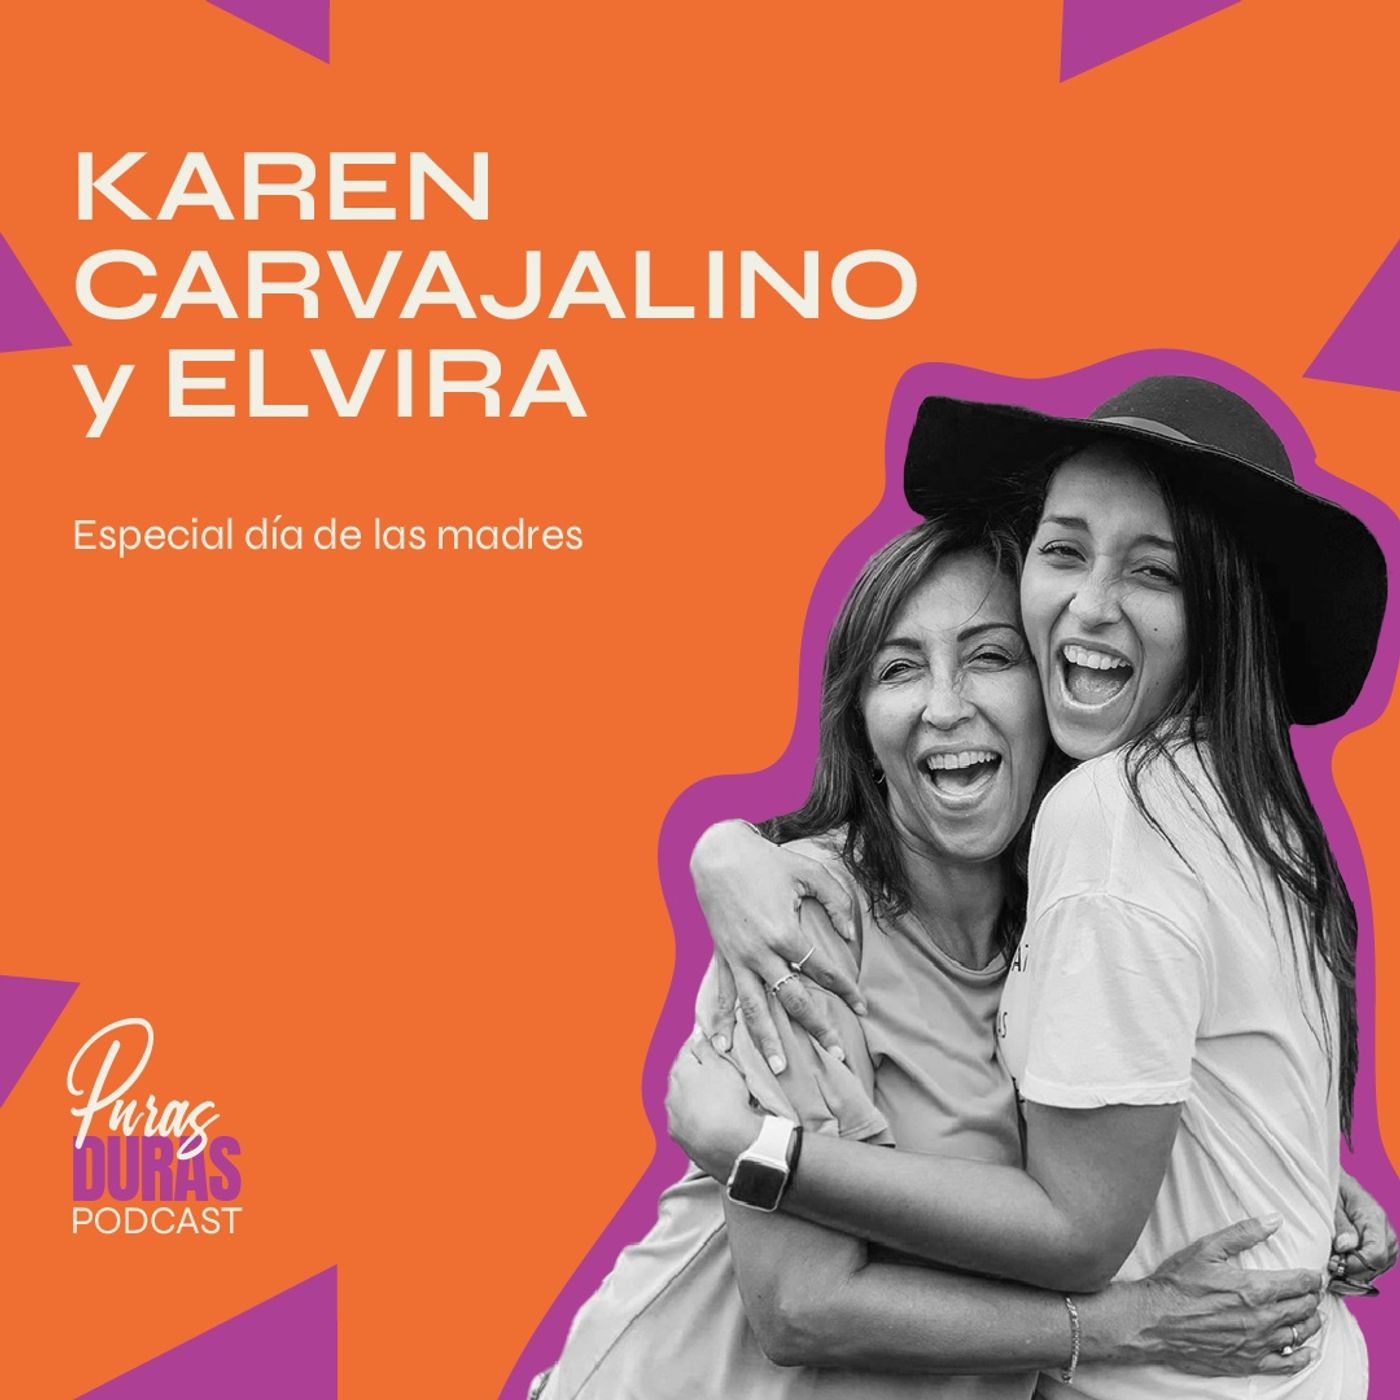 Especial día de las madres con Karen Carvajalino y Elvira